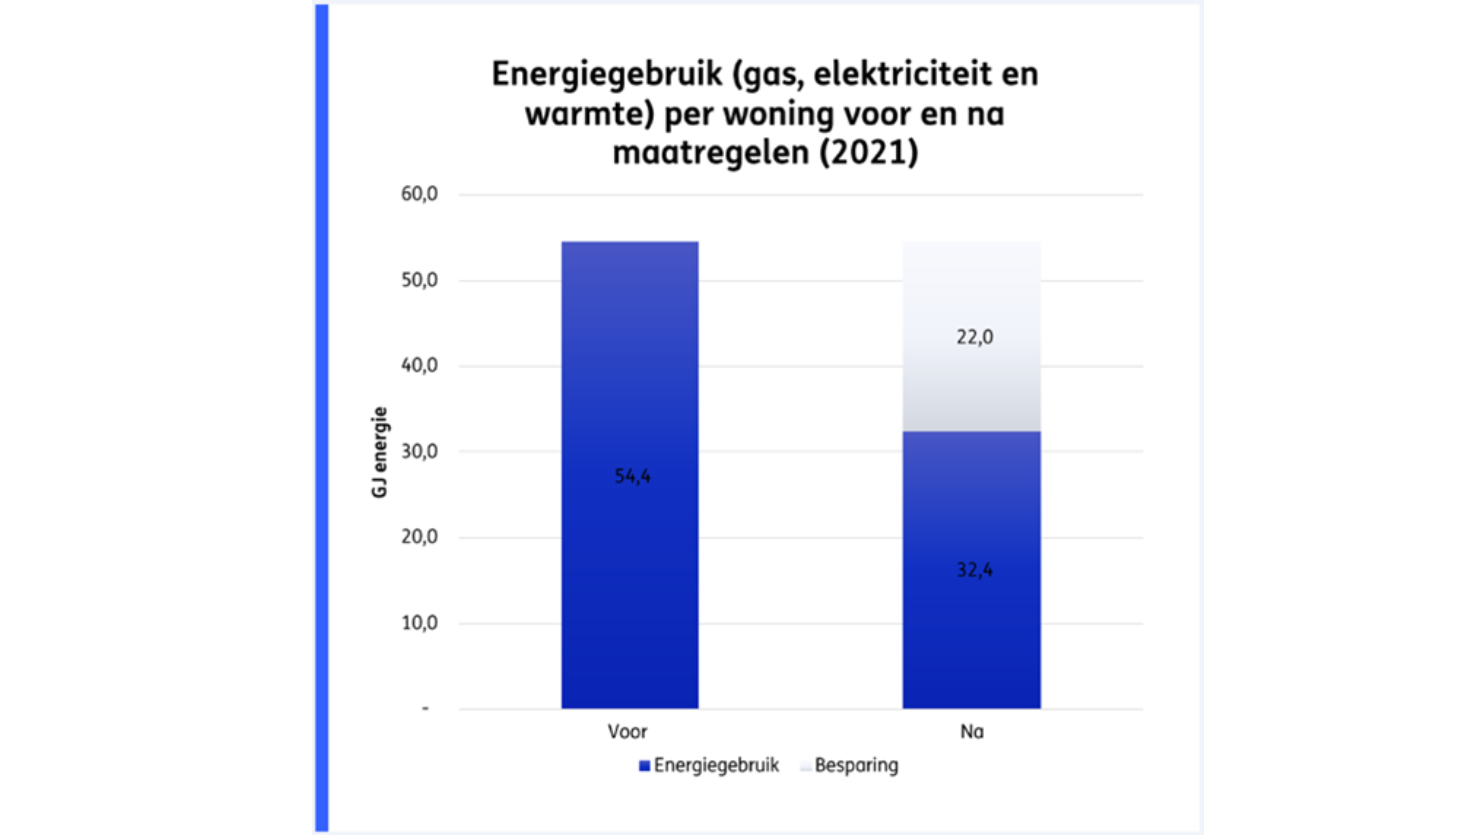 Energiegebruik per woning voor en na maatregelen (2021)